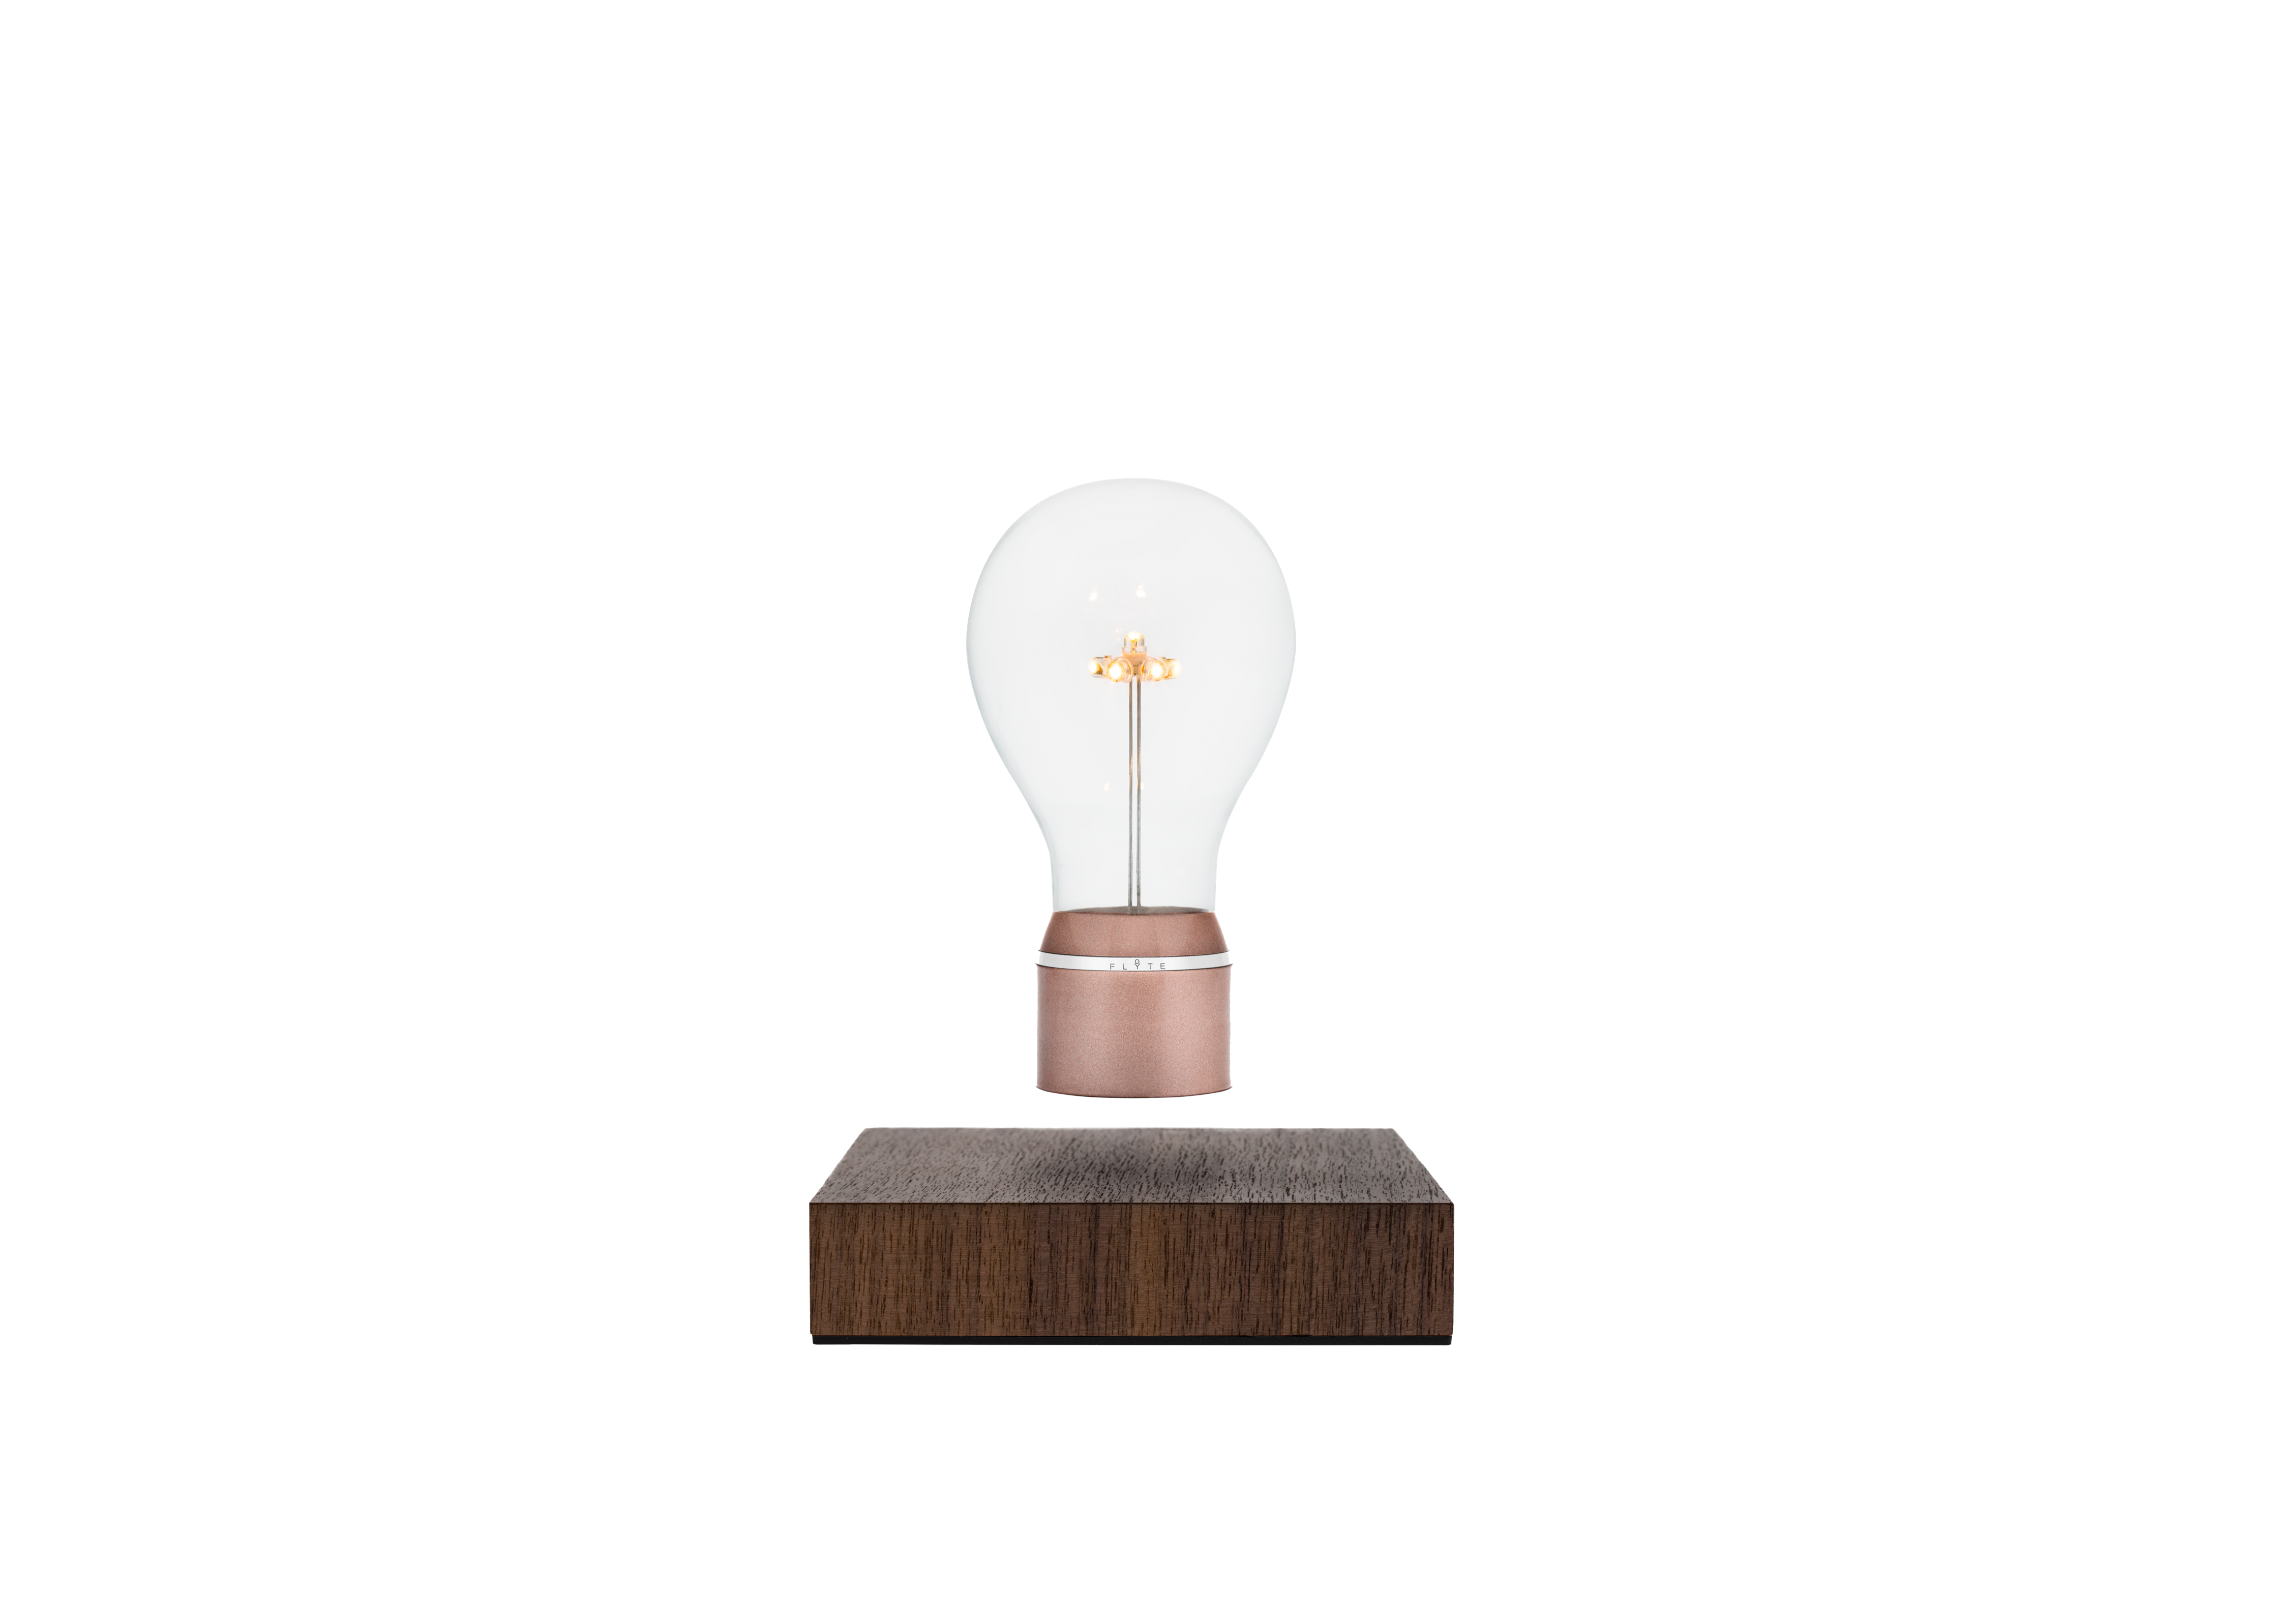 Flyte Buckminster levitating light bulb